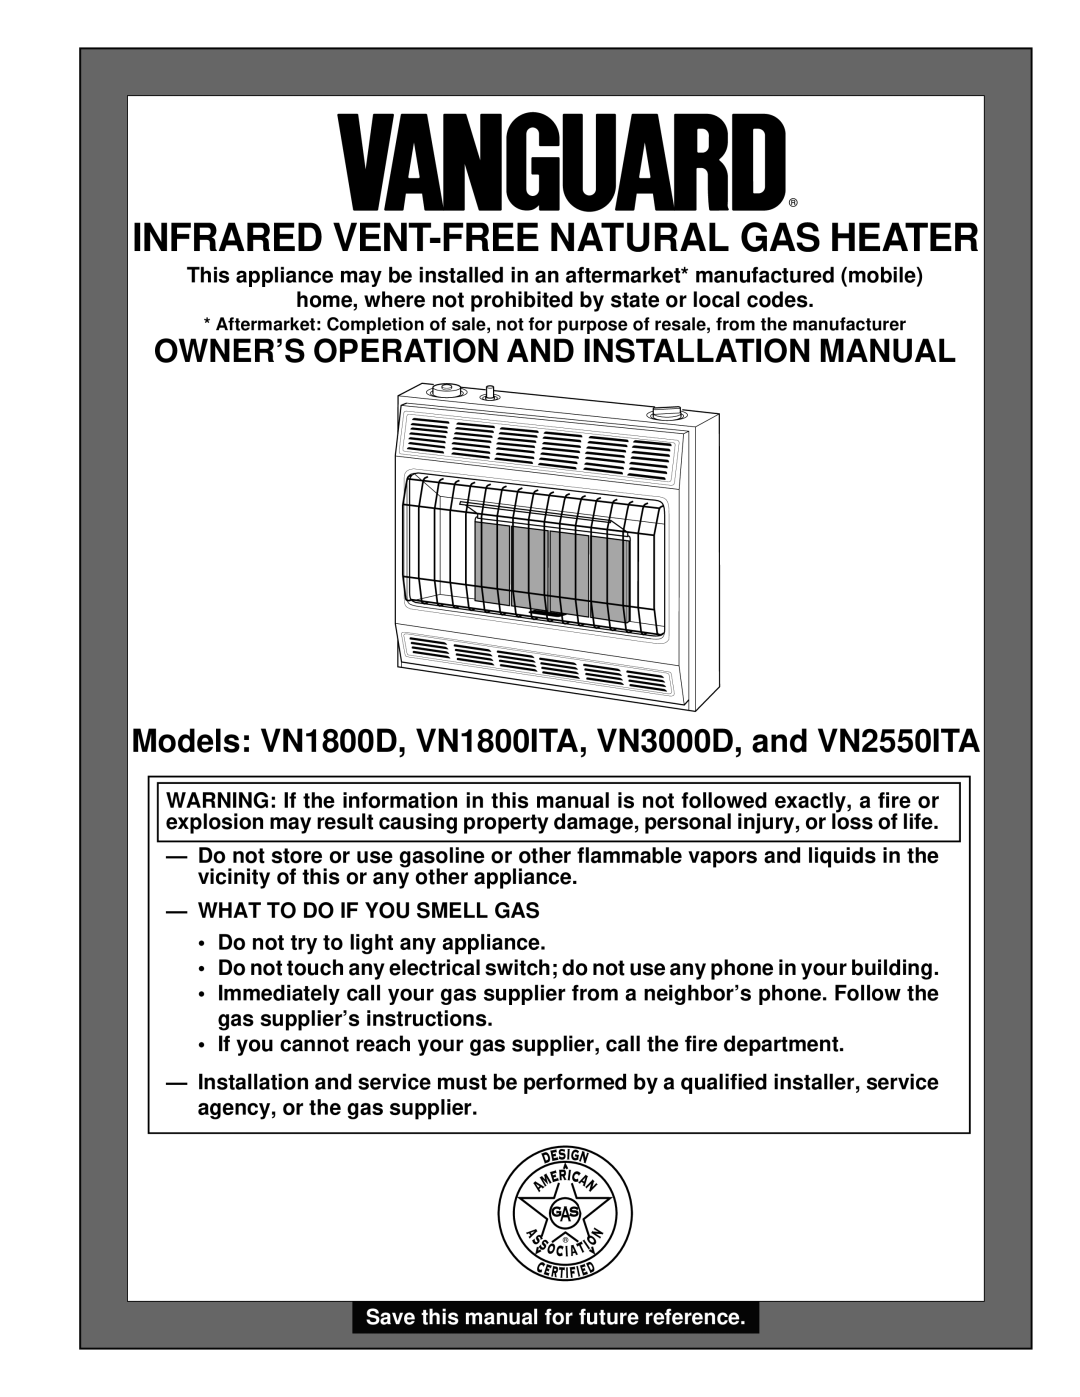 Desa VN1800D, VN3000D installation manual Owner’S Operation And Installation Manual, Infrared Vent-Freenatural Gas Heater 